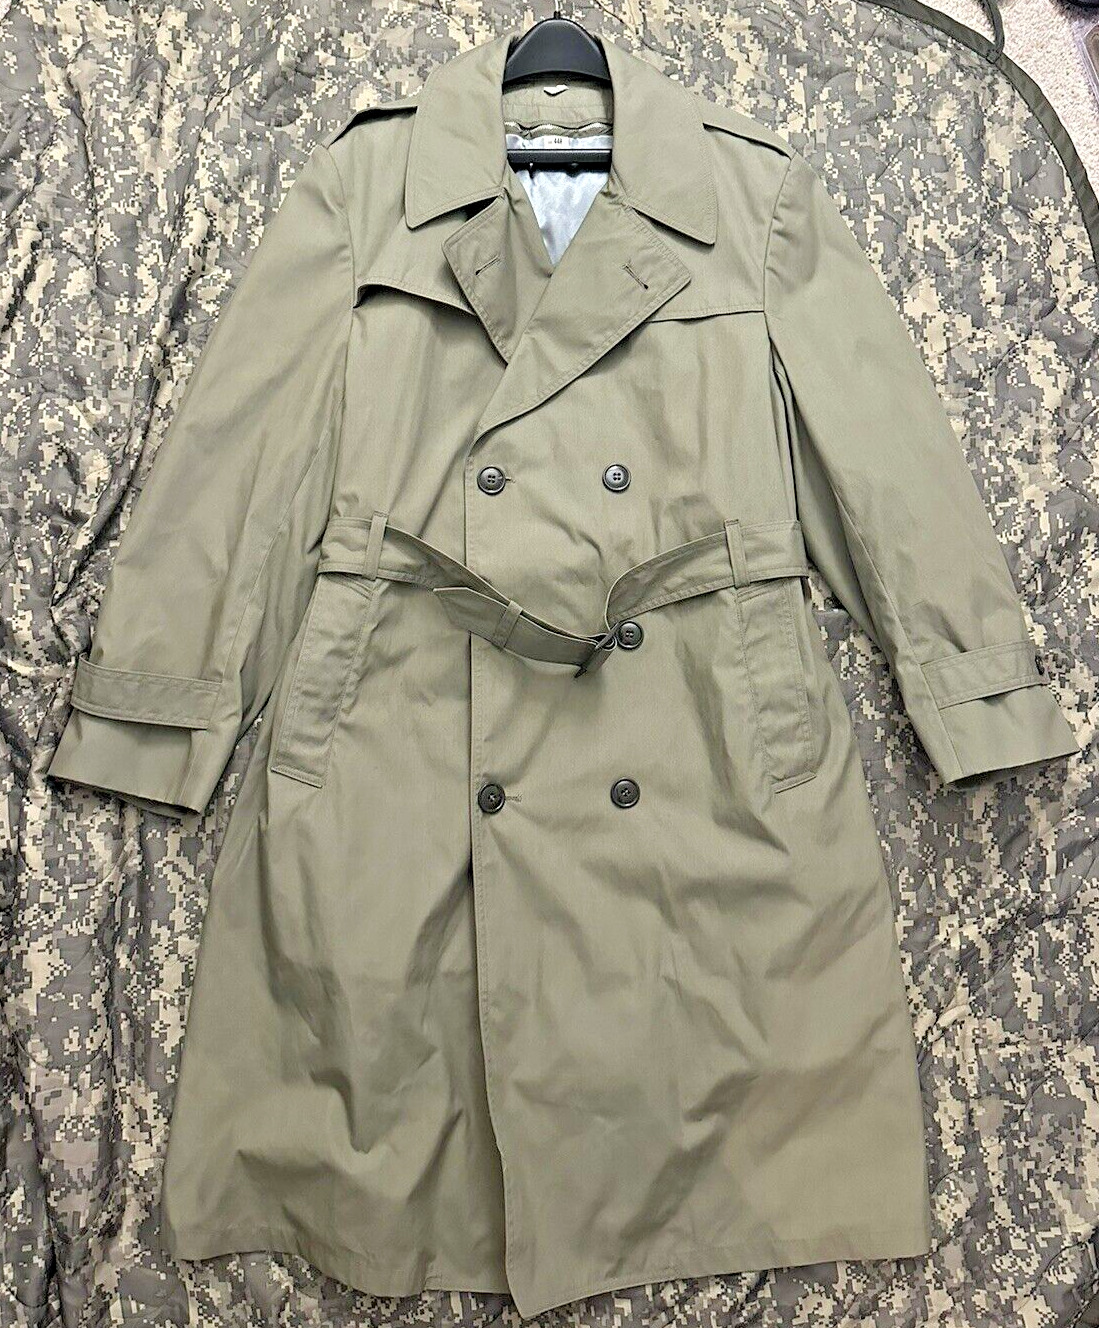 USMC MARINE CORPS ALL WEATHER COAT 44R ZIP IN LINER jacket trench coat